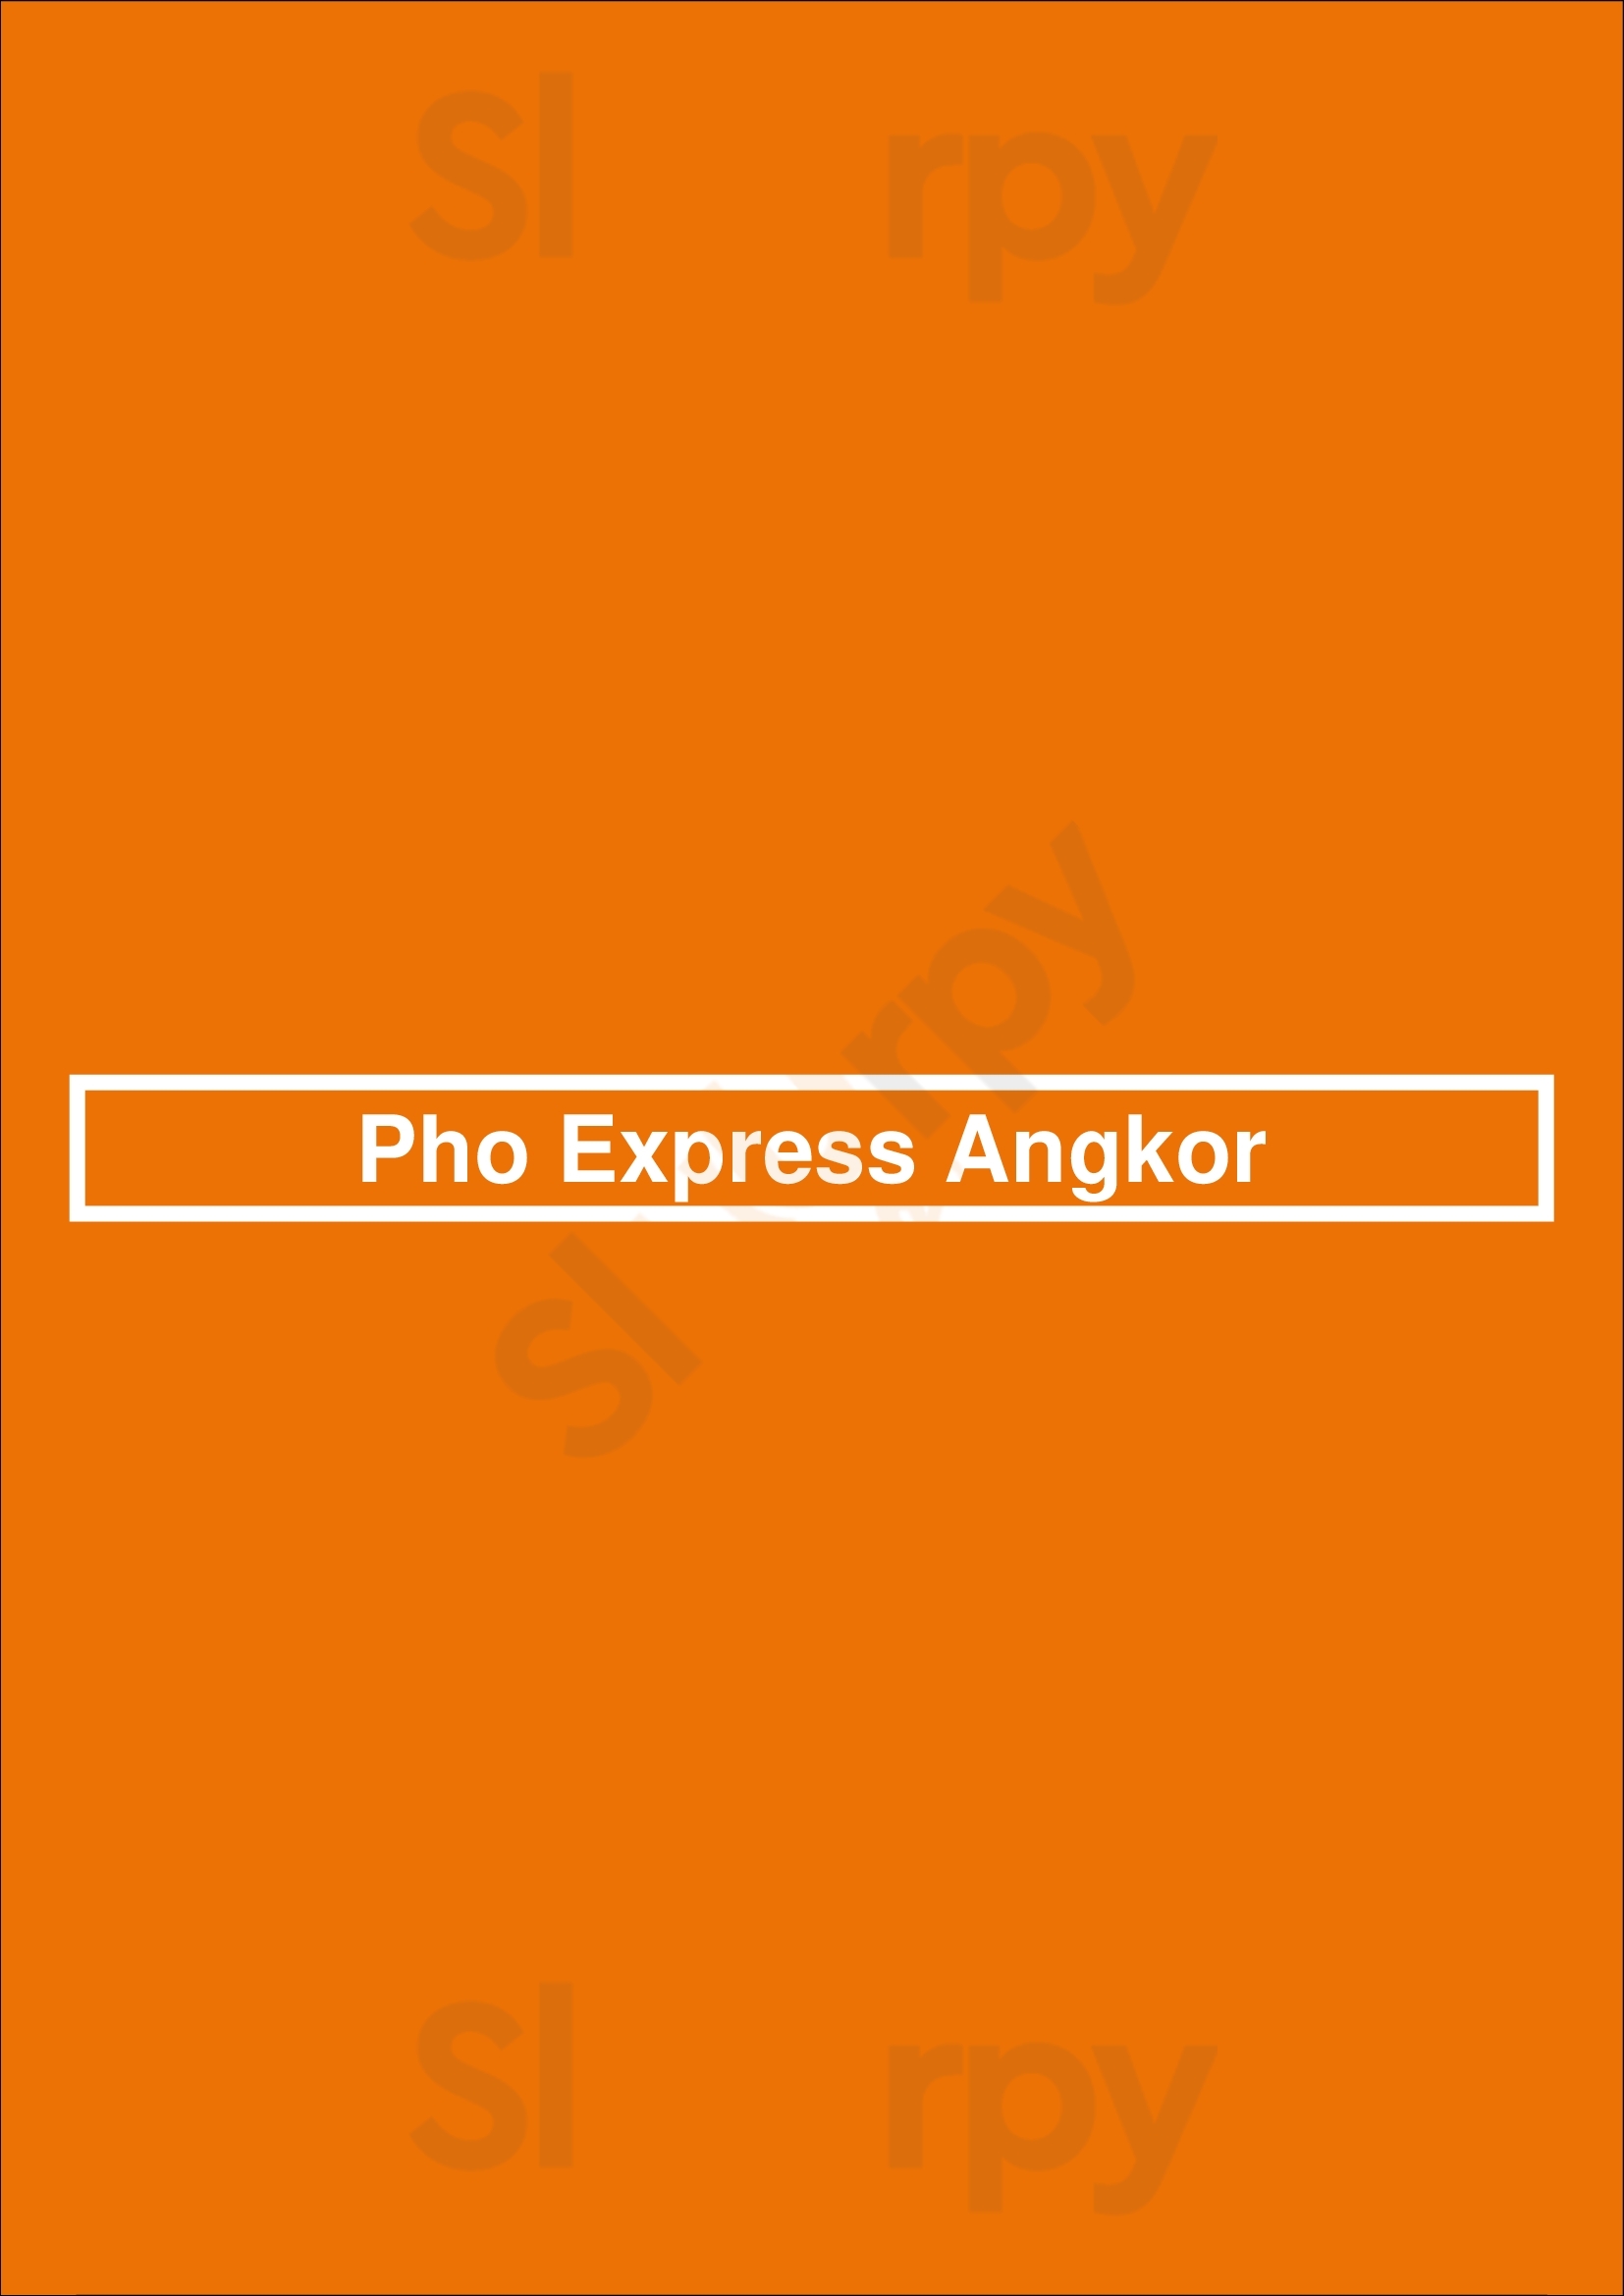 Pho Express Angkor New Westminster Menu - 1